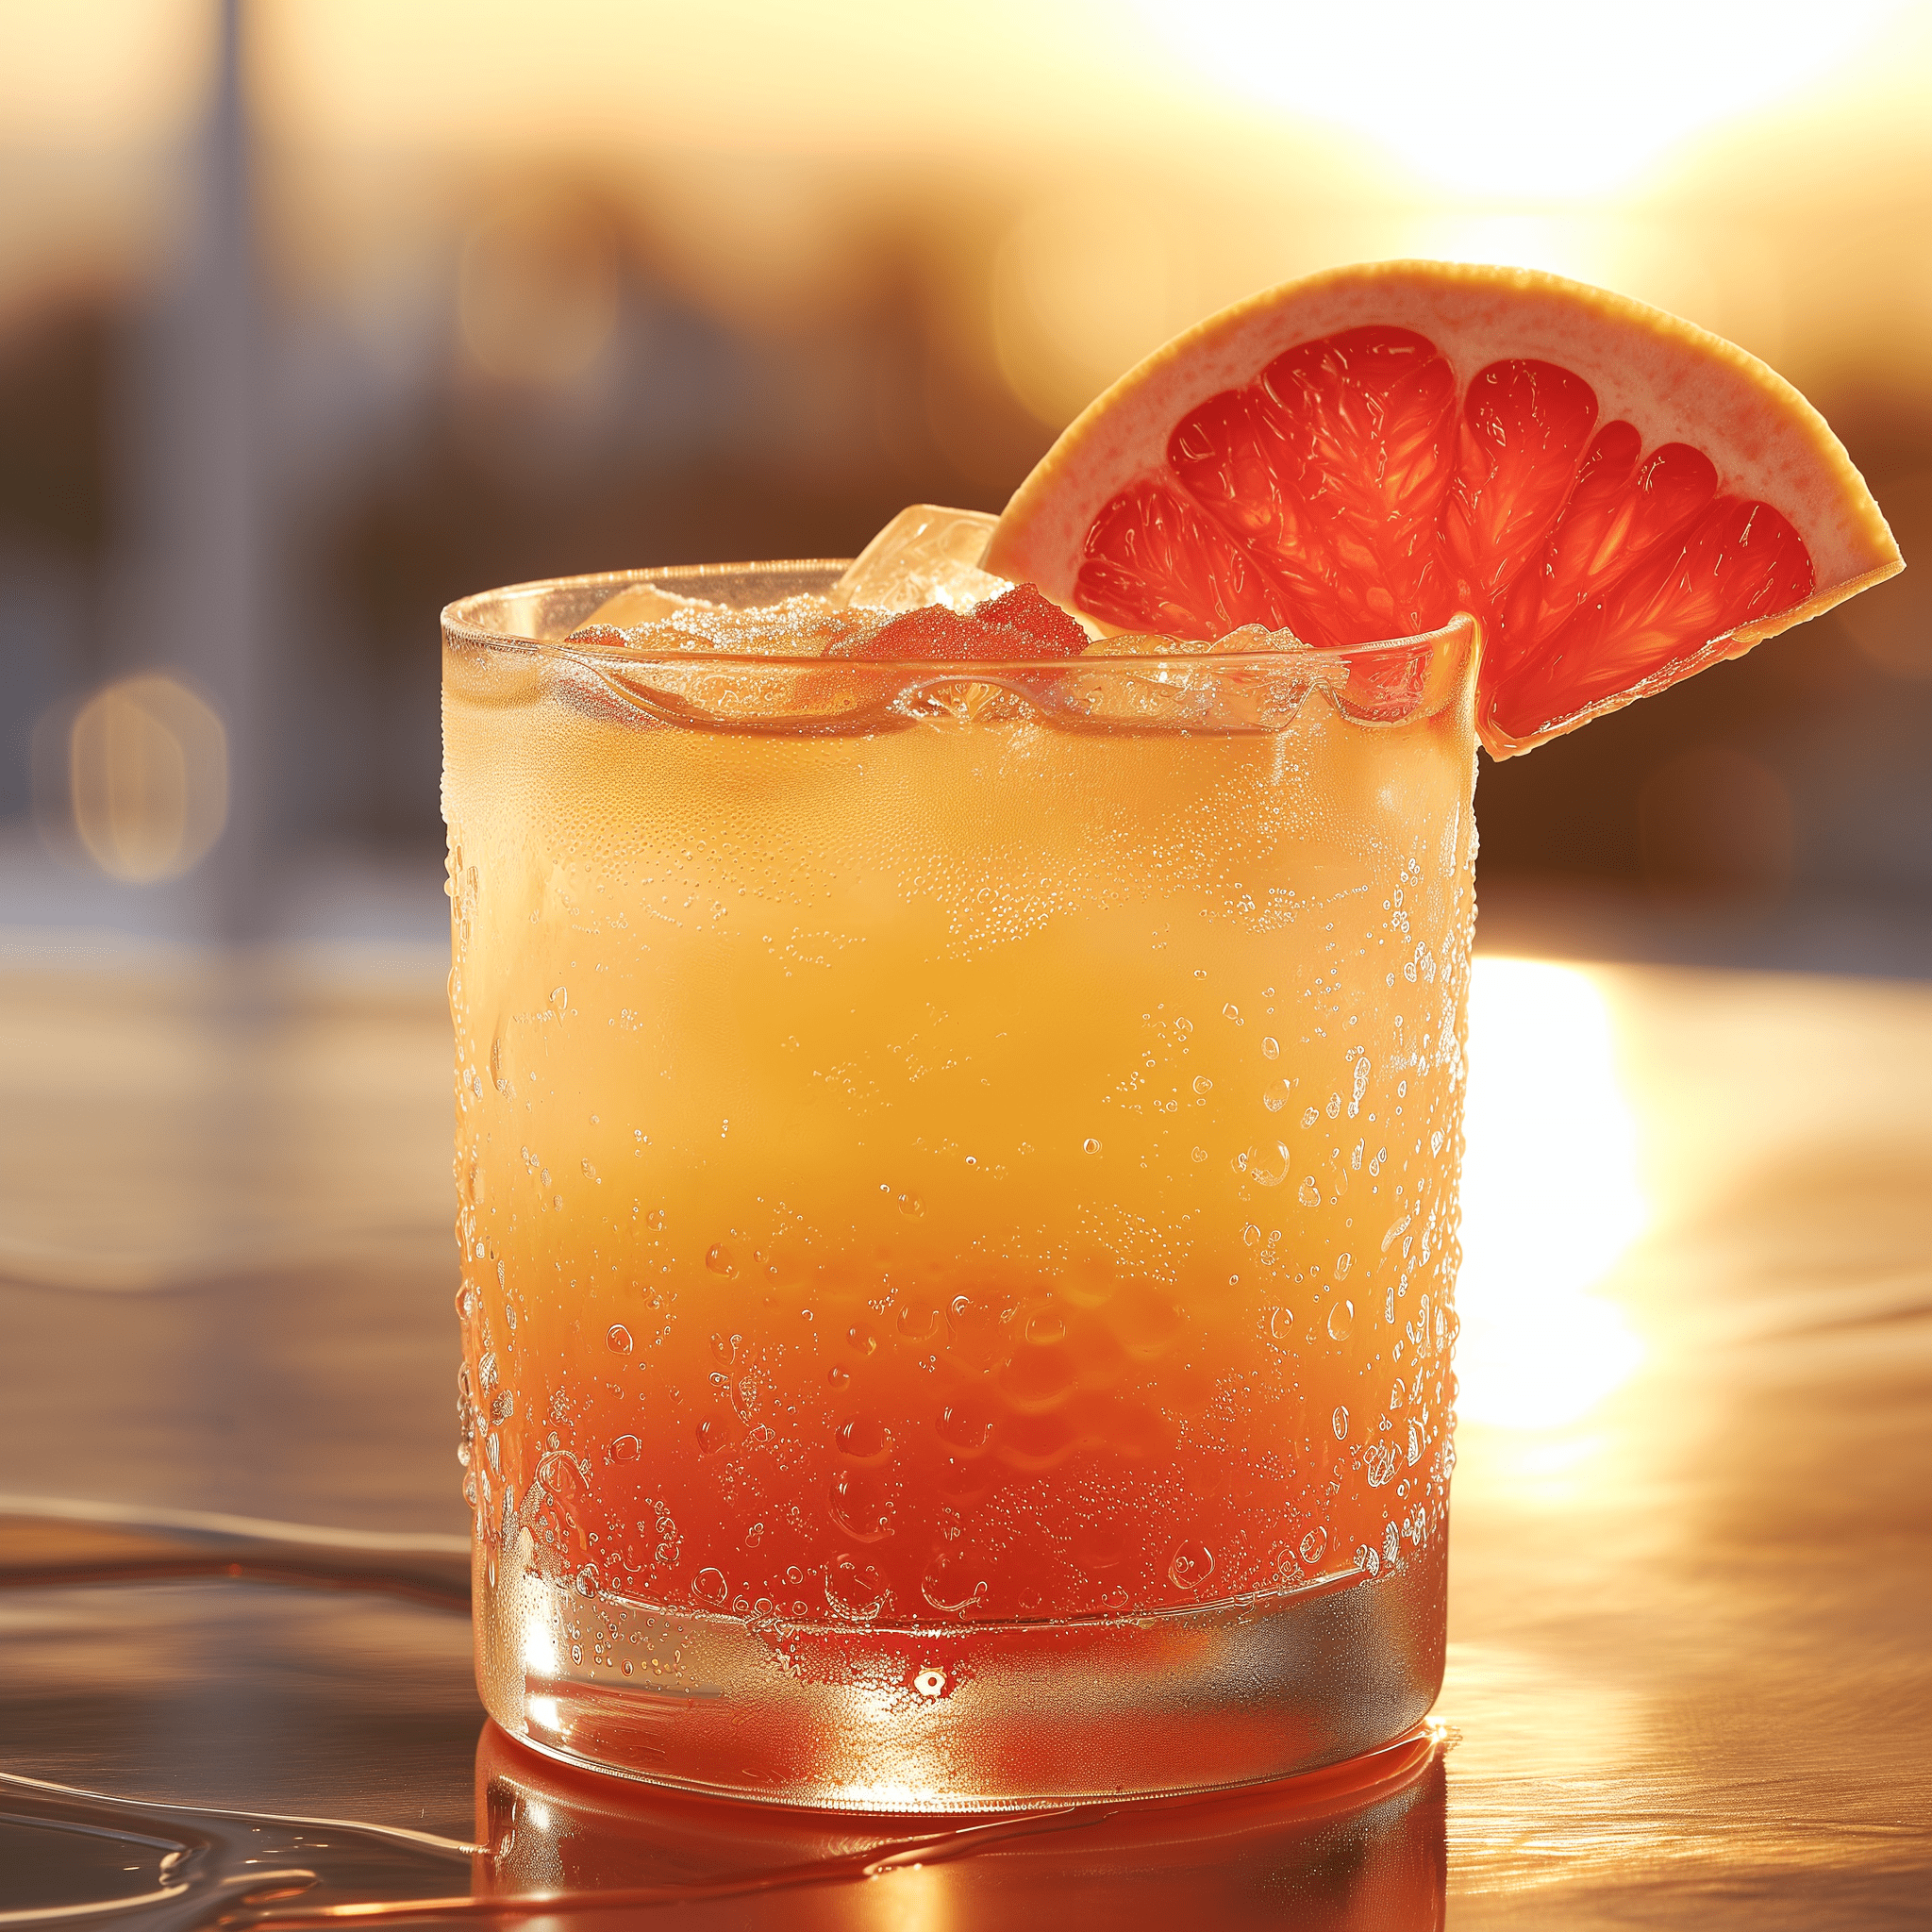 Rising Sun Cóctel Receta - El cóctel Rising Sun ofrece una deliciosa fusión de sabores dulces y ácidos. El jugo de pomelo proporciona un golpe agridulce, mientras que el jarabe de maracuyá agrega una dulzura exquisita. La presencia del vodka es suave, haciendo que la bebida sea moderadamente fuerte pero no abrumadora.